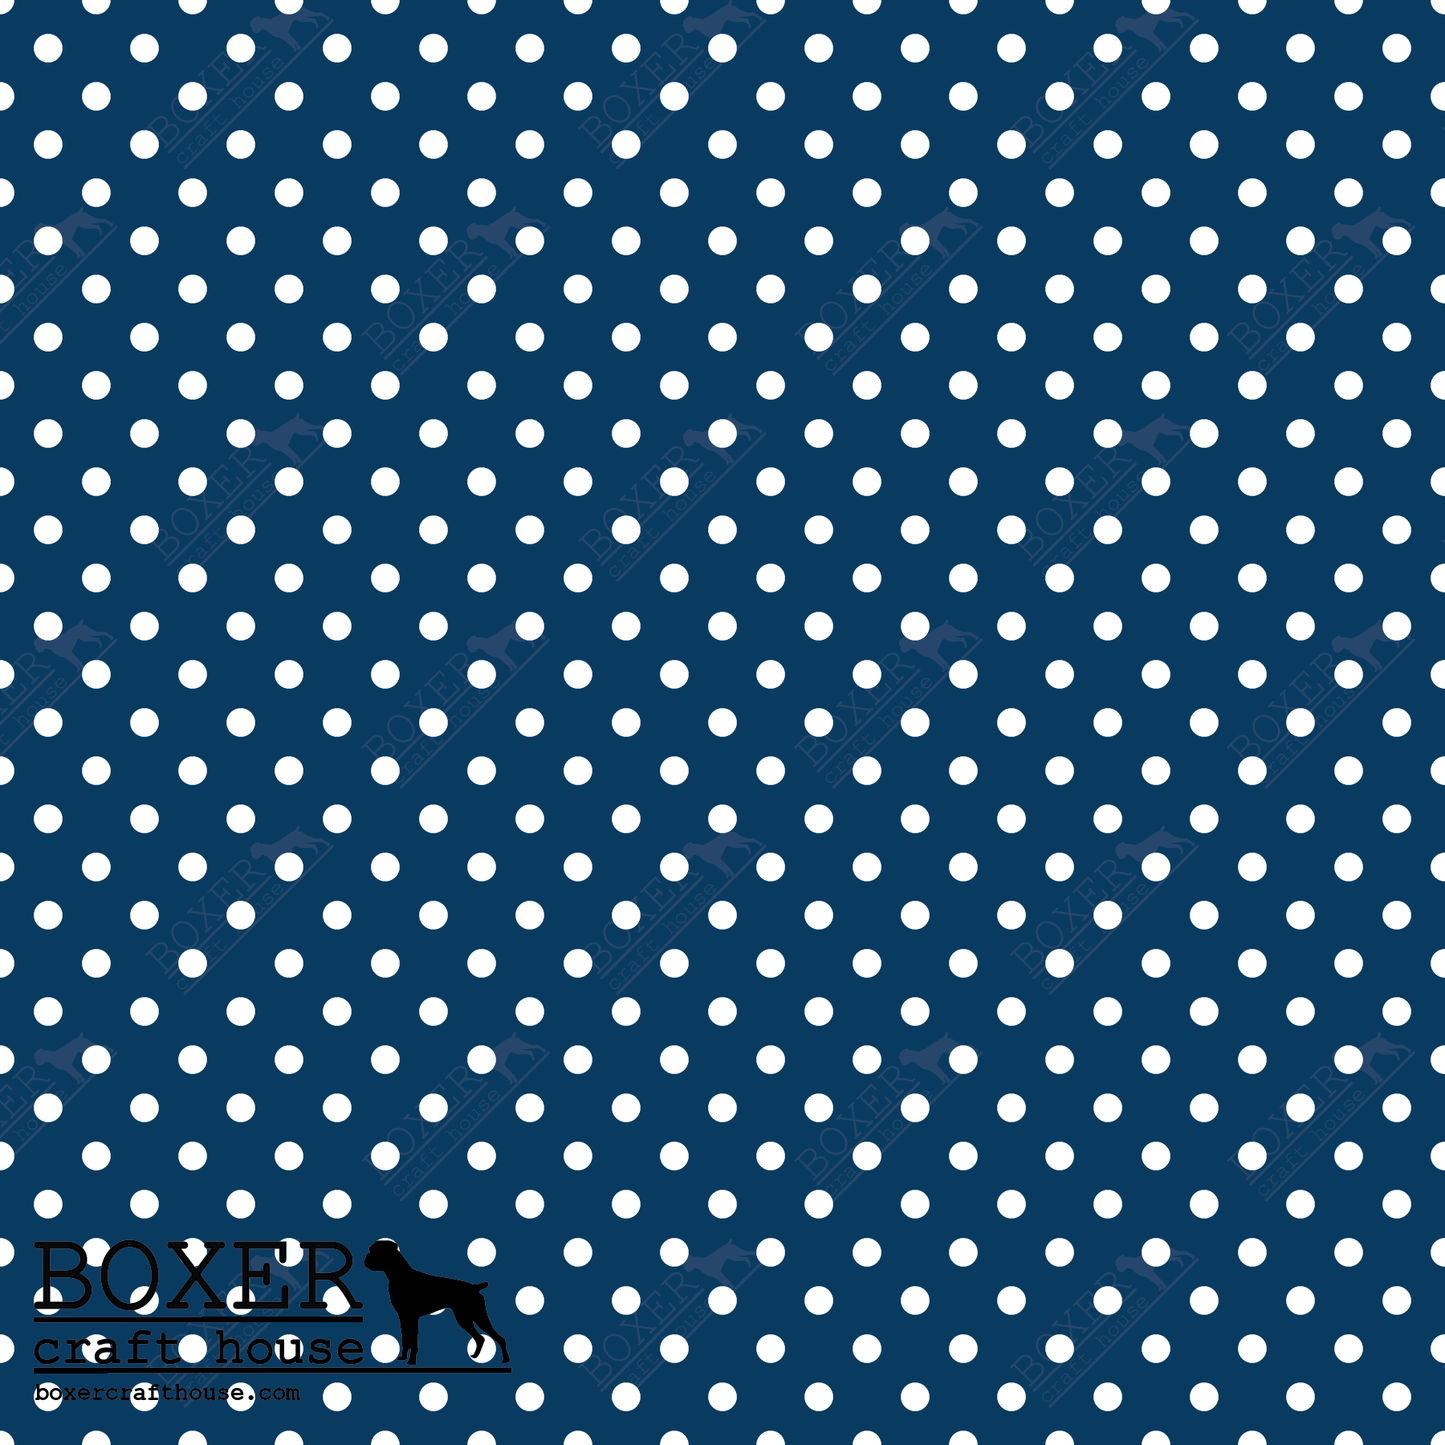 Dots 1/8" - Tardis Blue